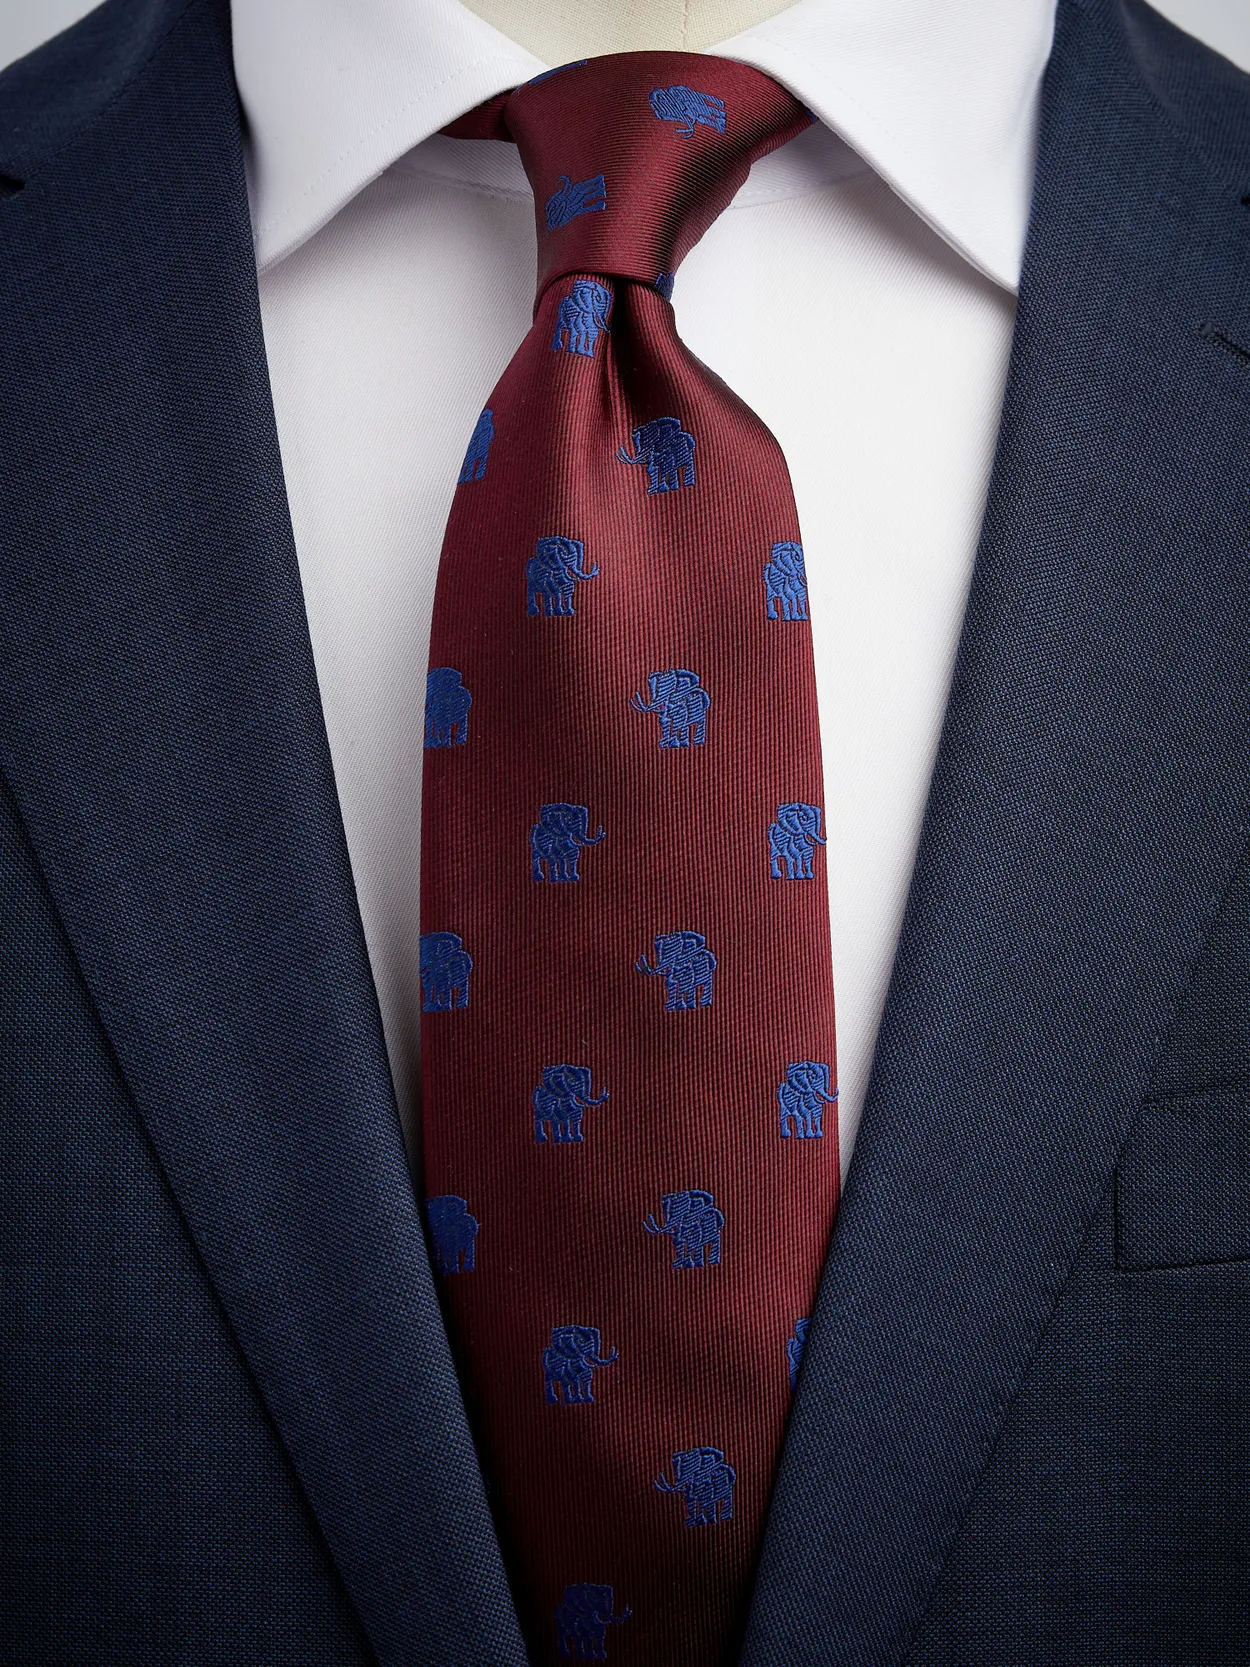 Red & Blue Tie Motif